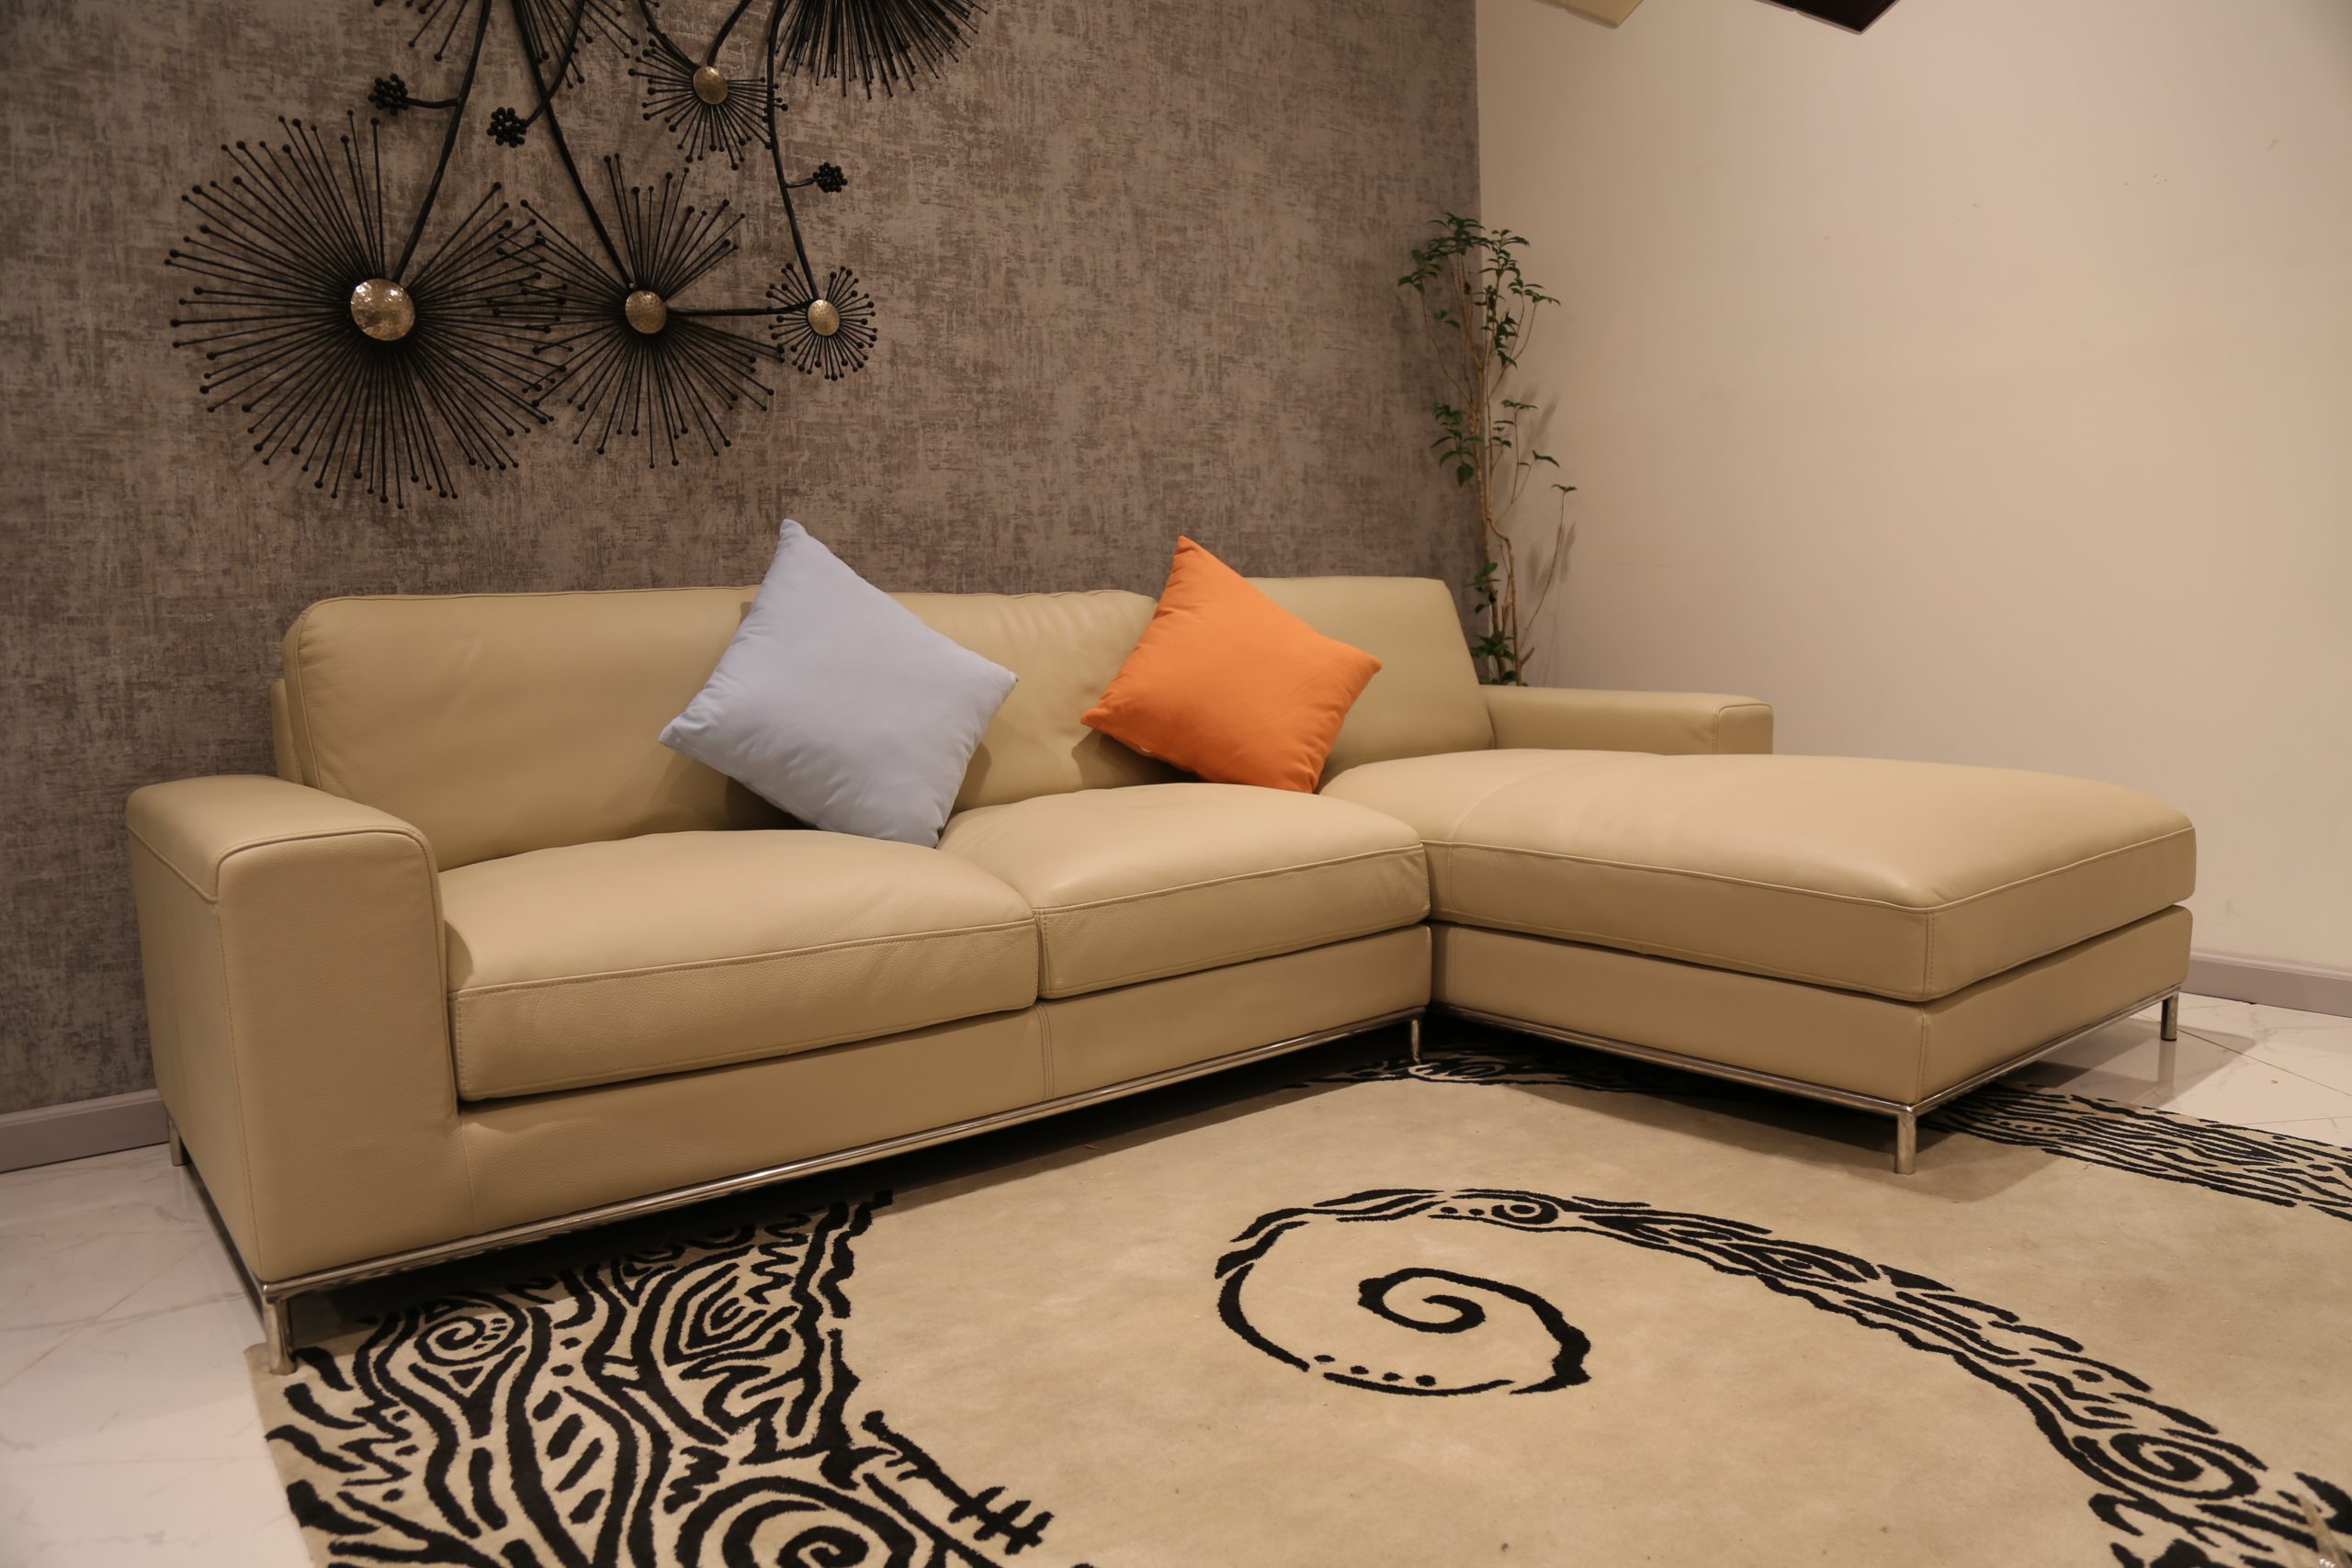 Sofa Ami - sự kết hợp hoàn hảo giữa thiết kế hiện đại và chất lượng tốt nhất, chẳng hề xa lạ một vị thế của sự tiện nghi.